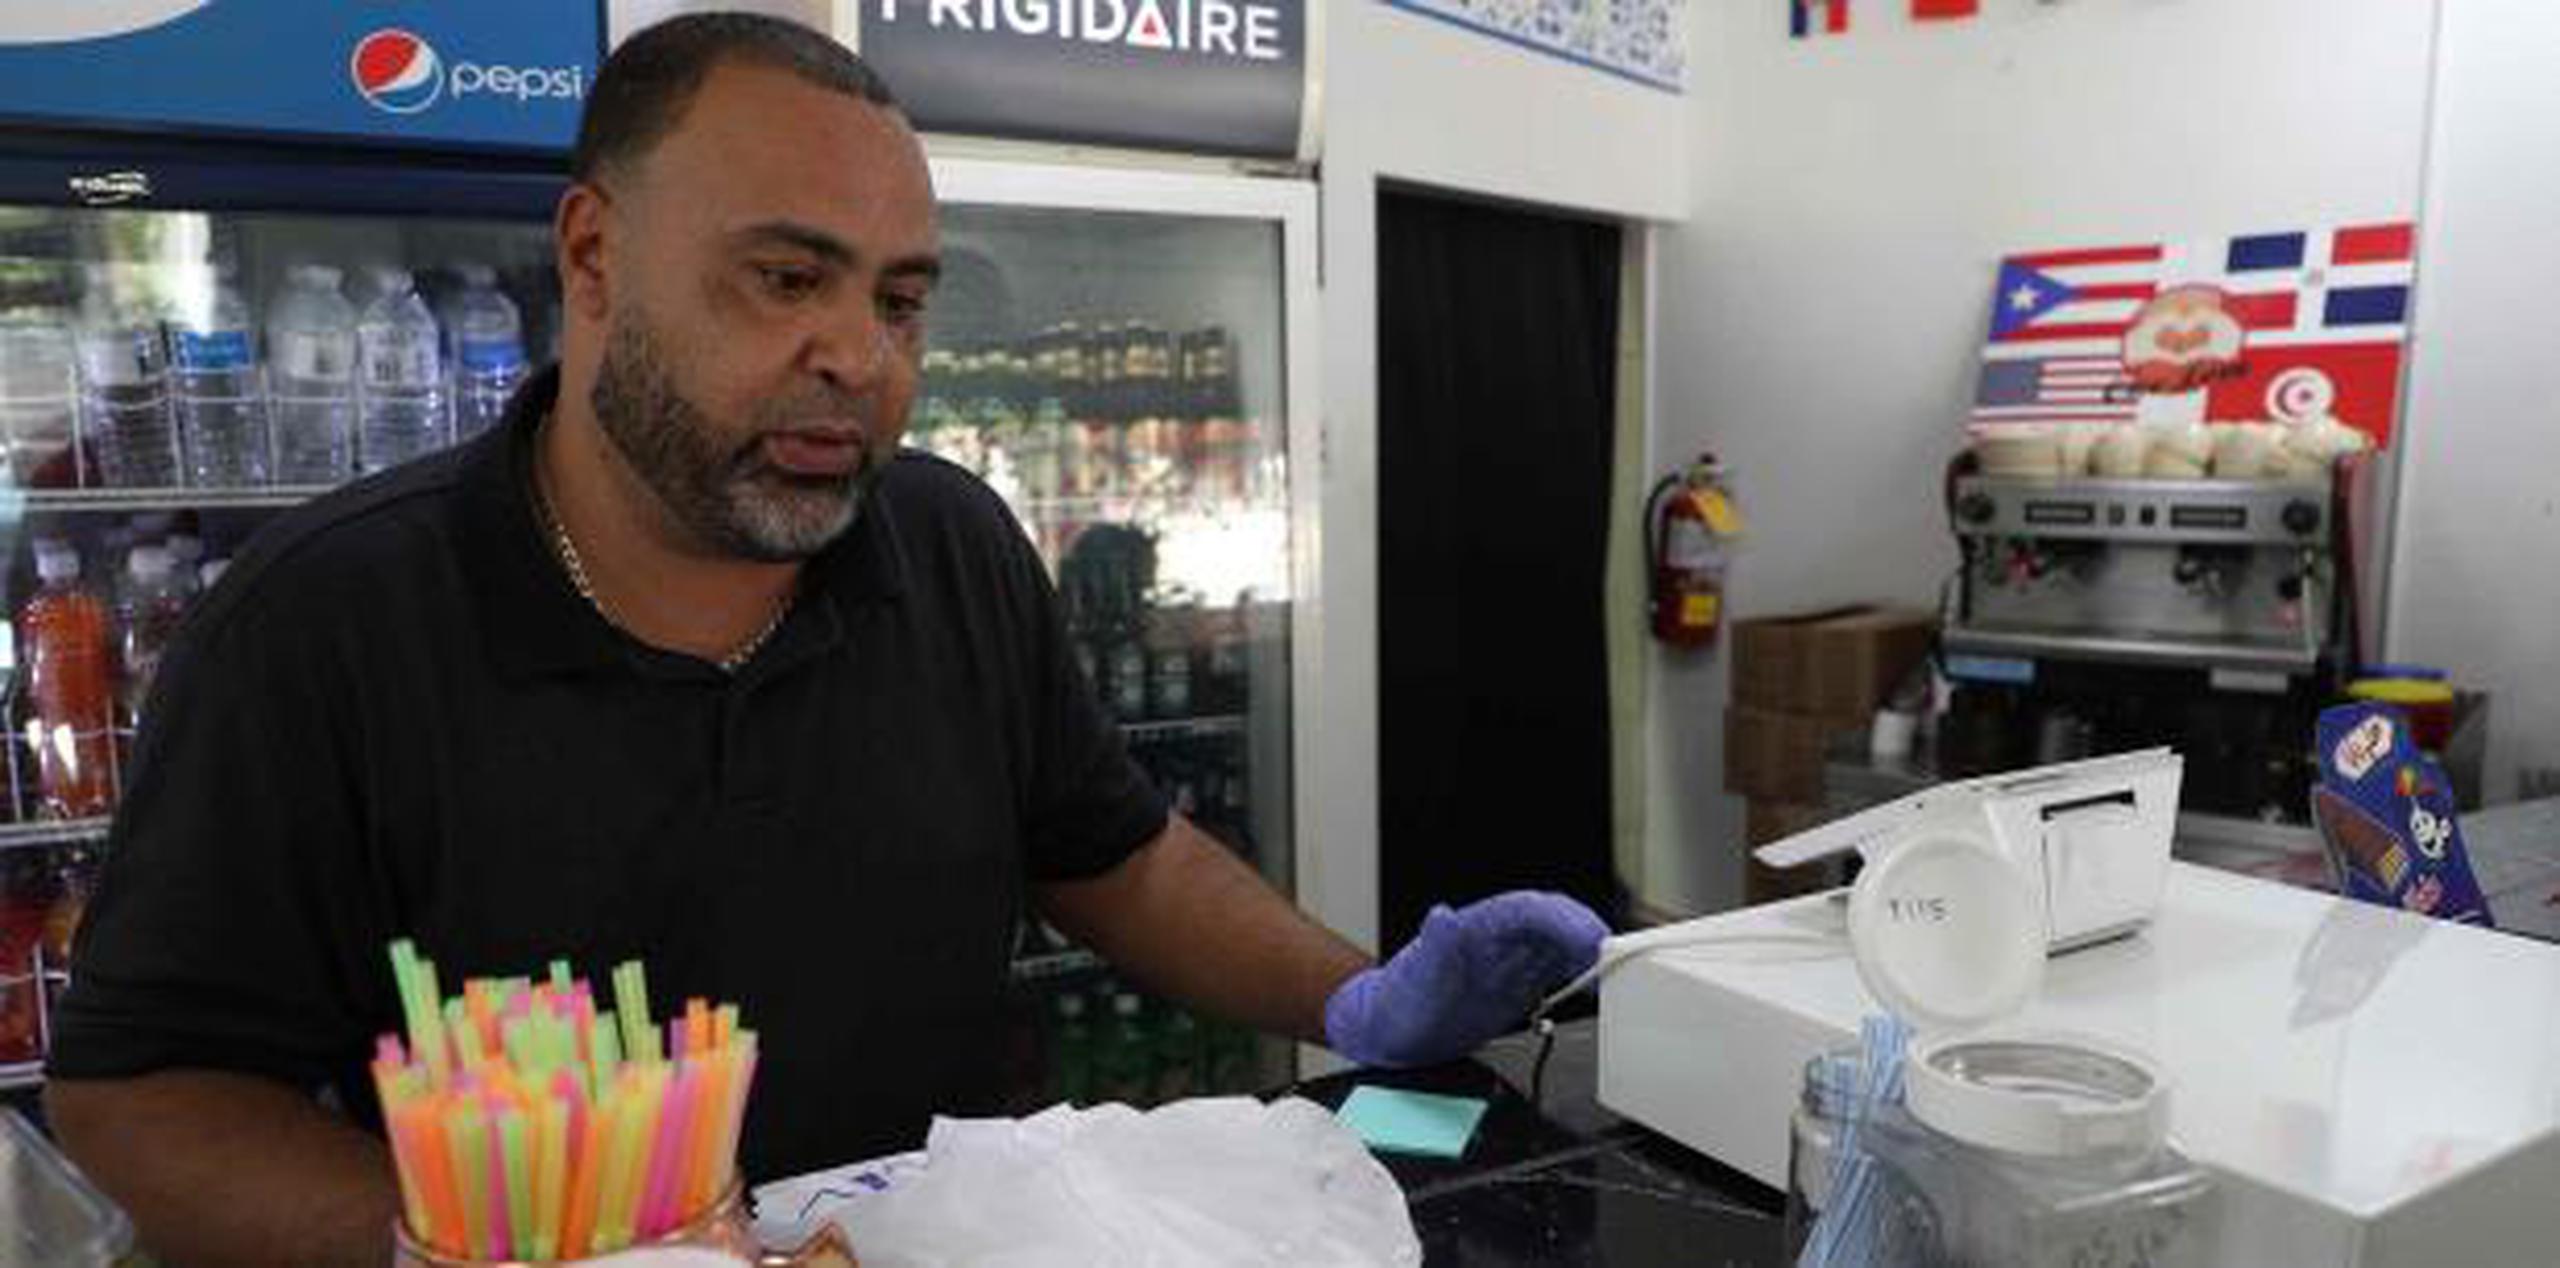 El dueño del restaurante de comida mediterránea/criolla Café Sidibou, Ahmed Hamza, alegó  tener problemas con la compañía que opera la máquina con la que cobra el Impuesto sobre Ventas y Uso.  (juan.martinez@gfrmedia.com)